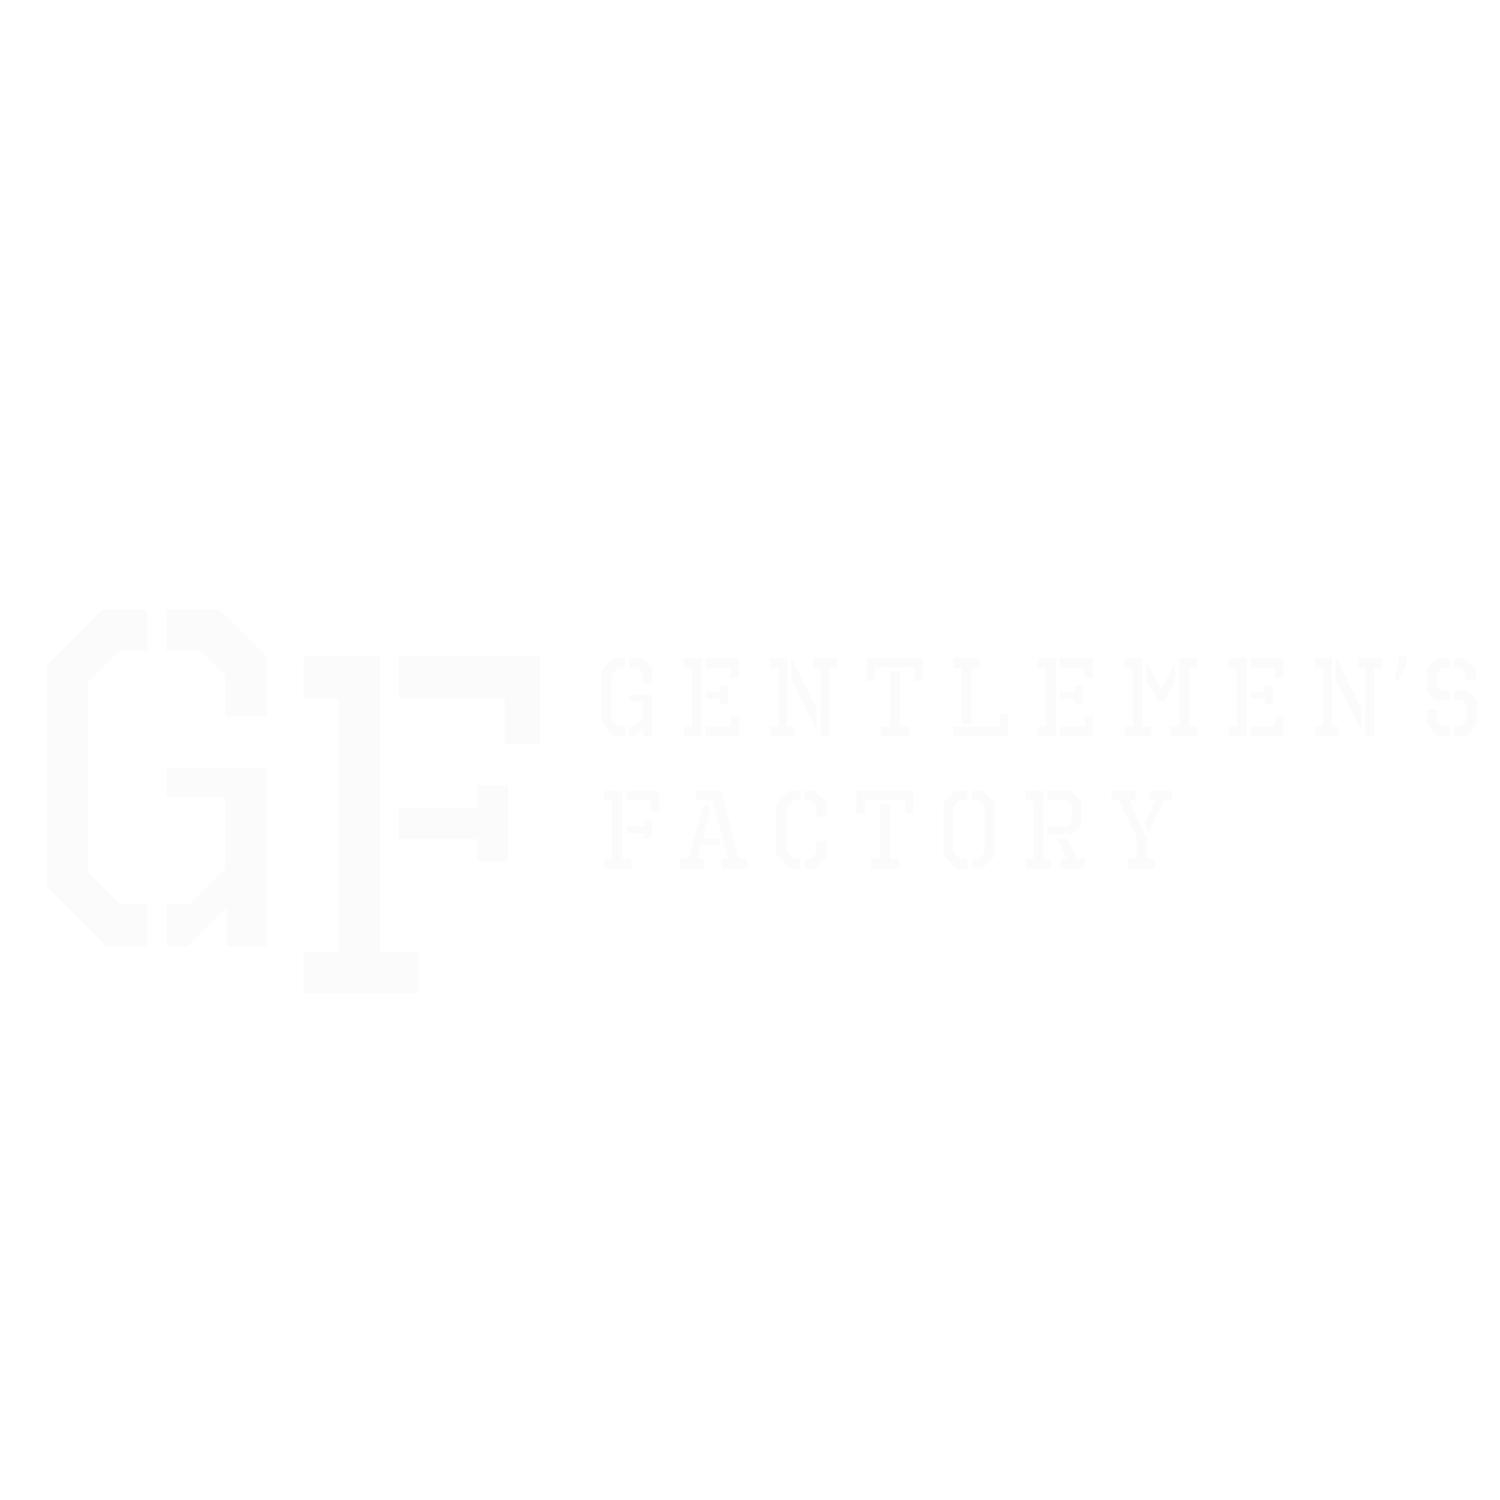 The Gentlemen's Factory